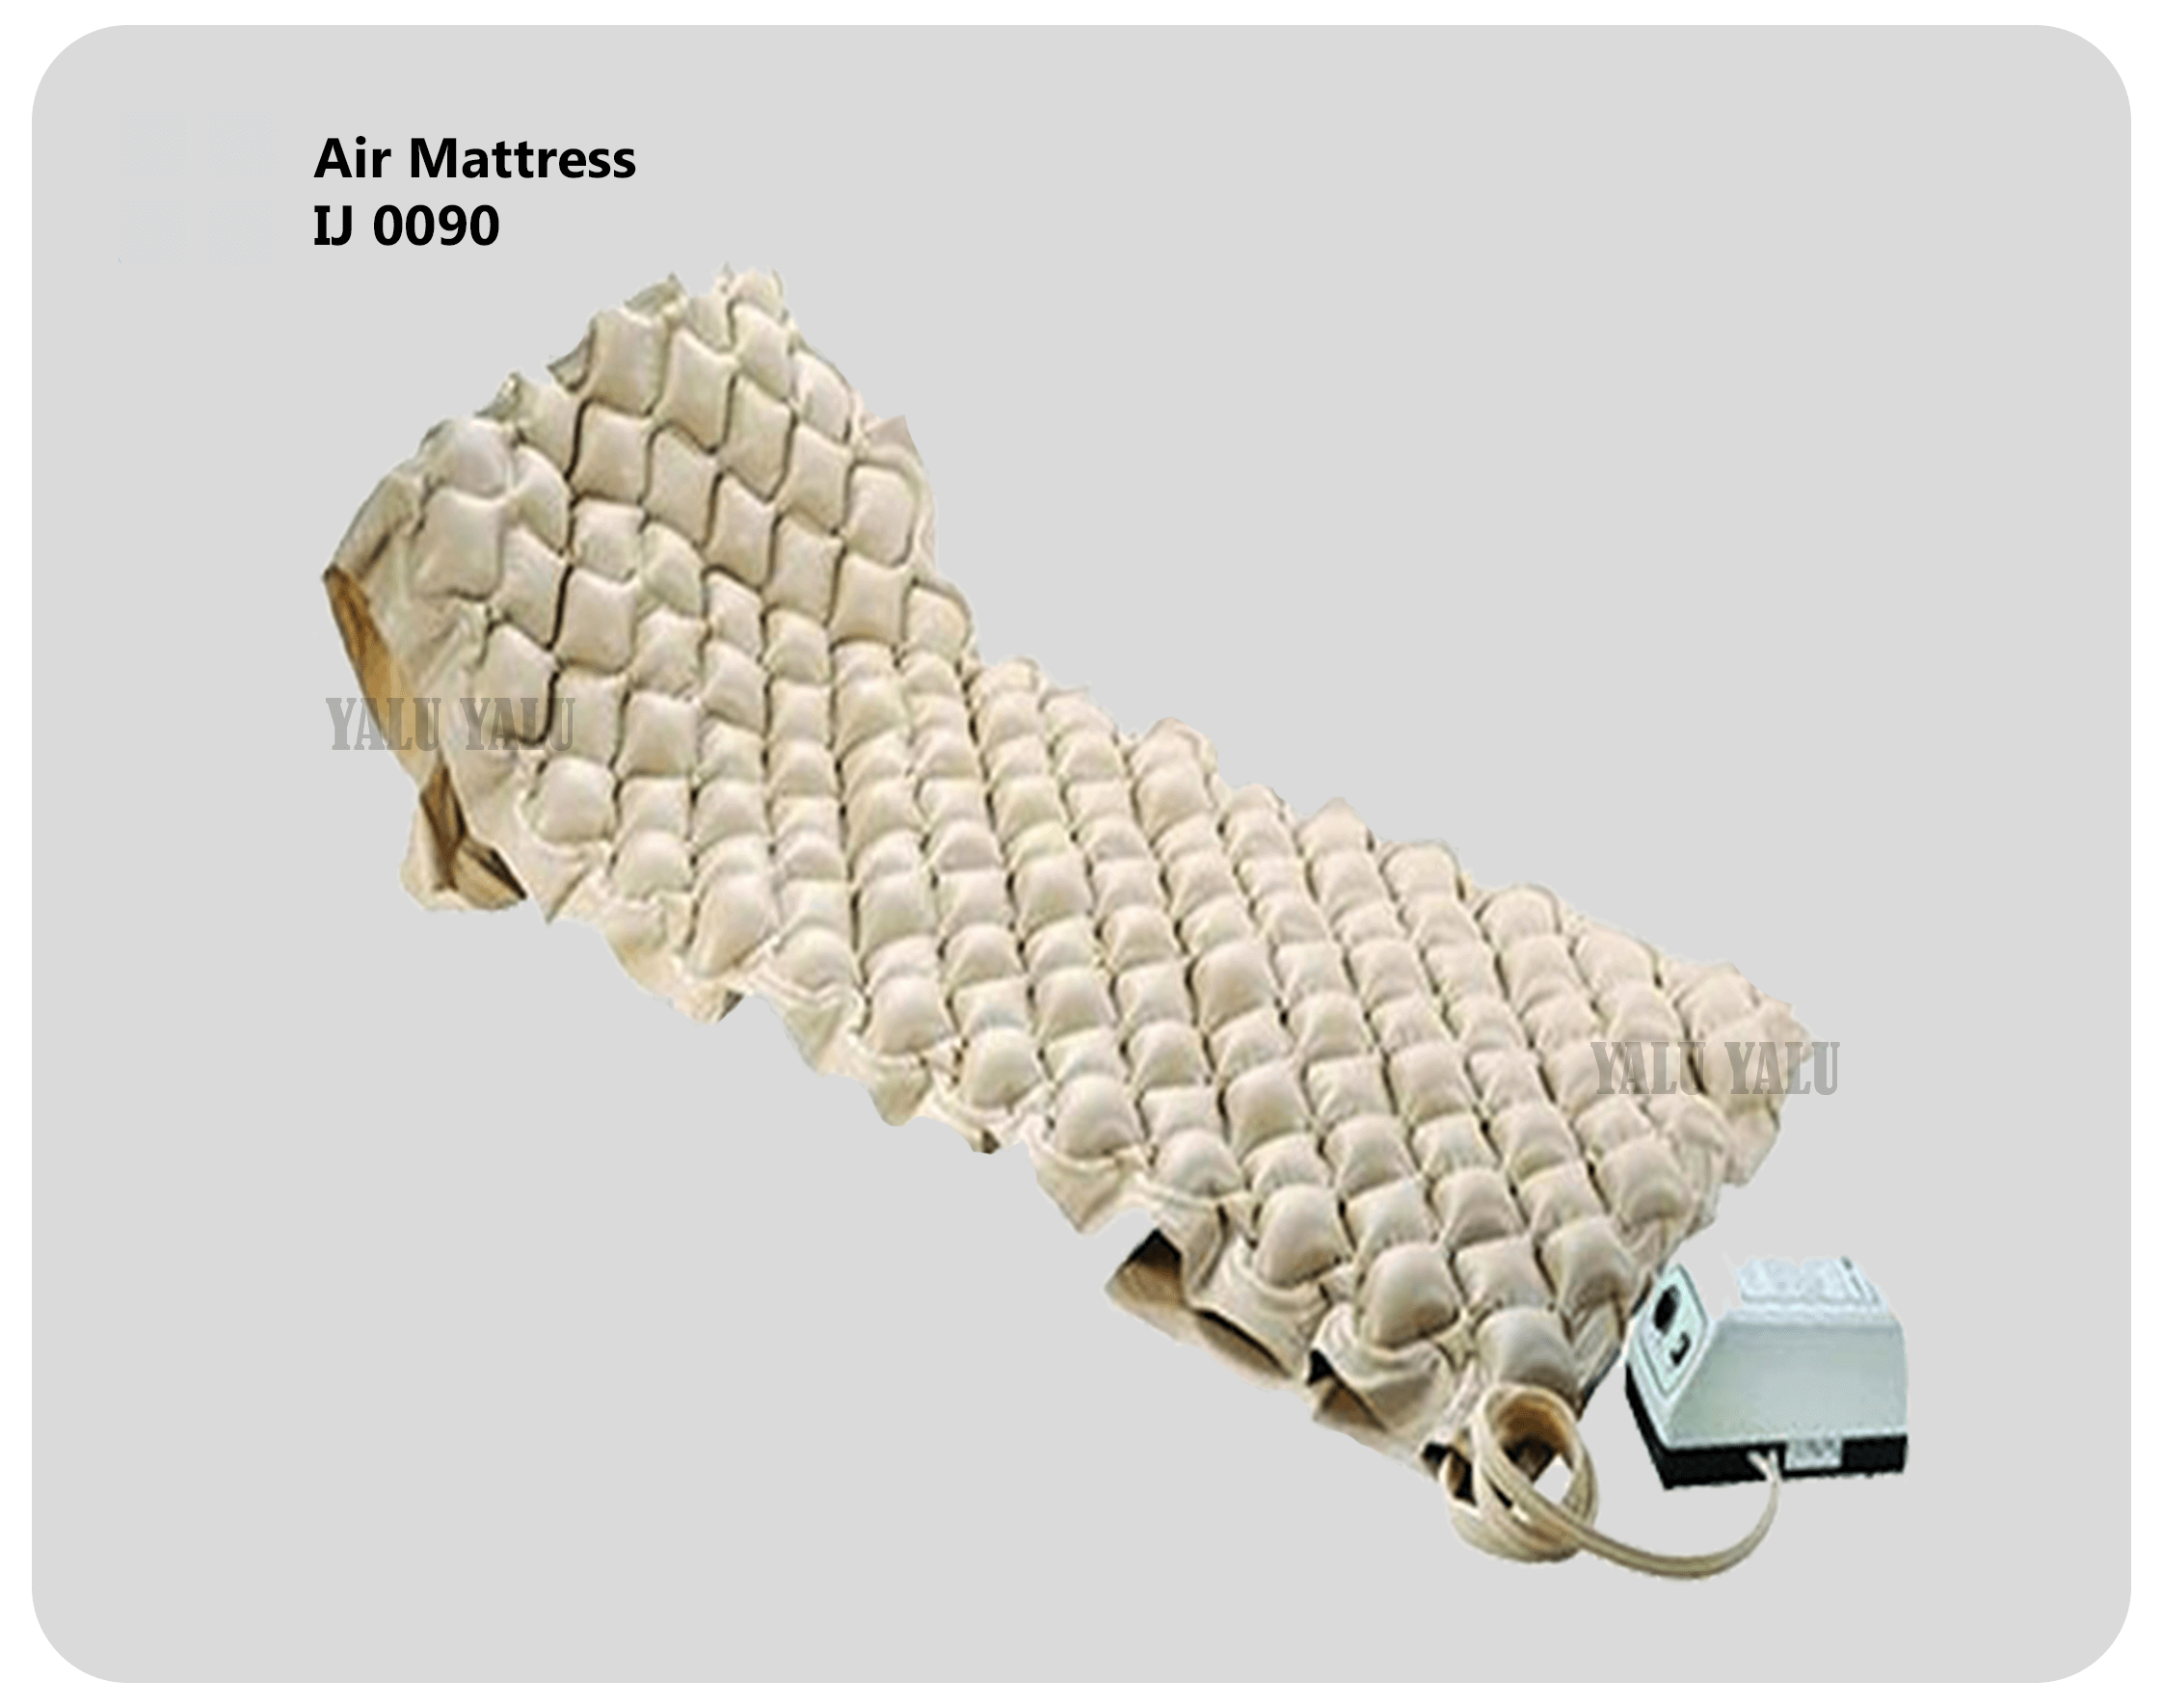 air mattress near 60096